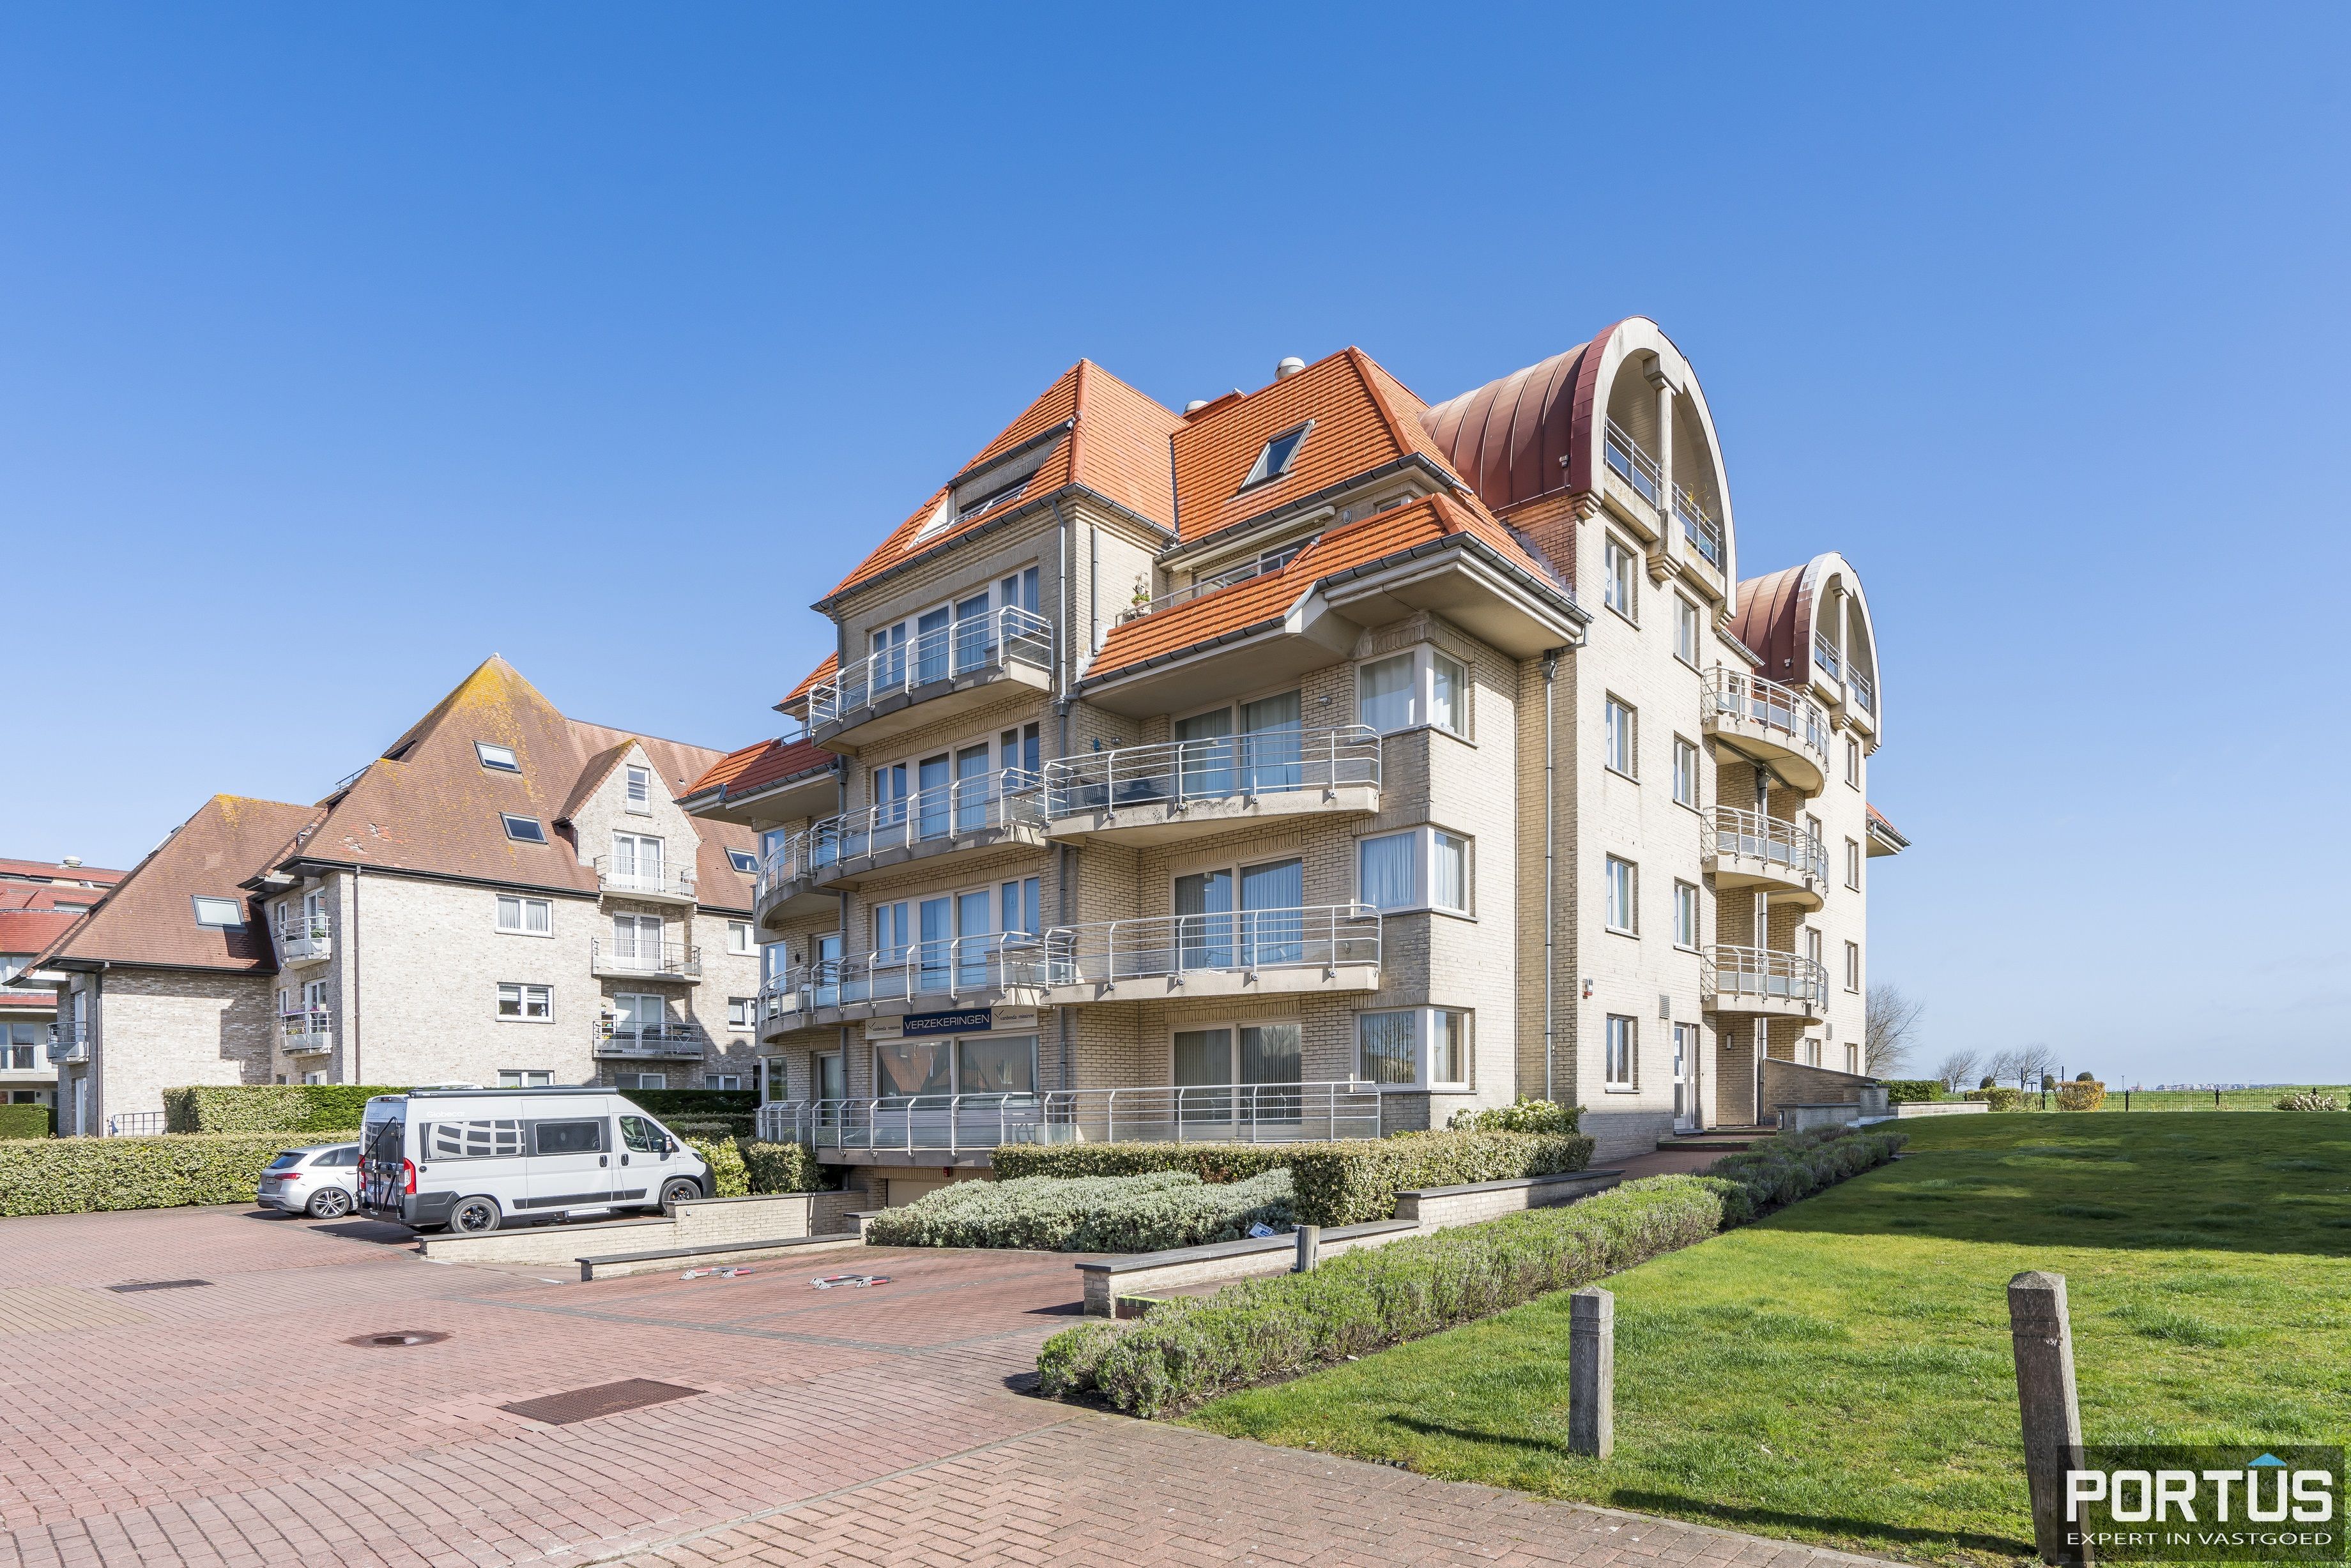 Appartement/Handelsgelijkvloers met terras te koop te Nieuwpoort - 15041